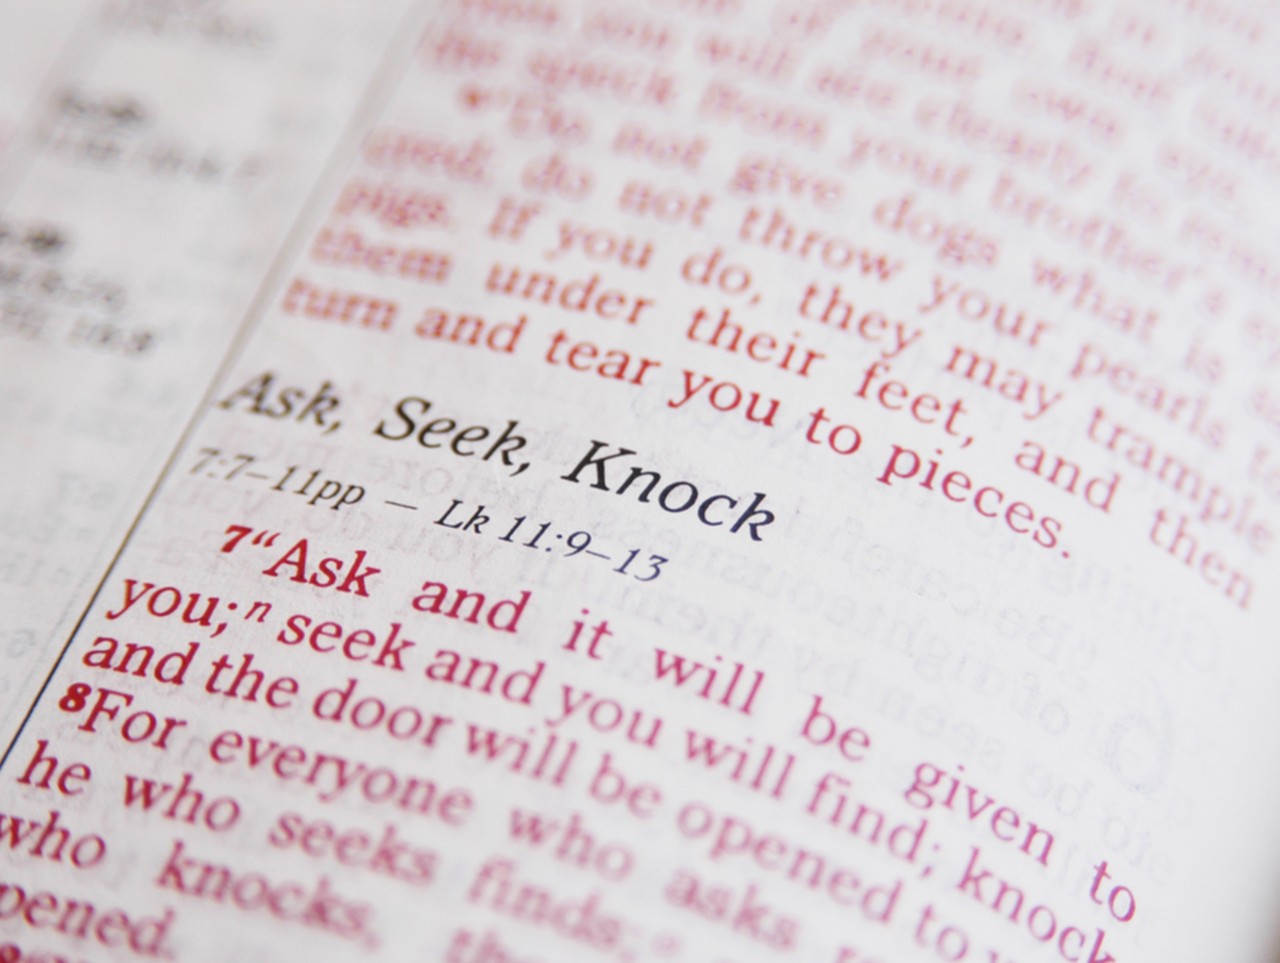 Ask, seek, knock